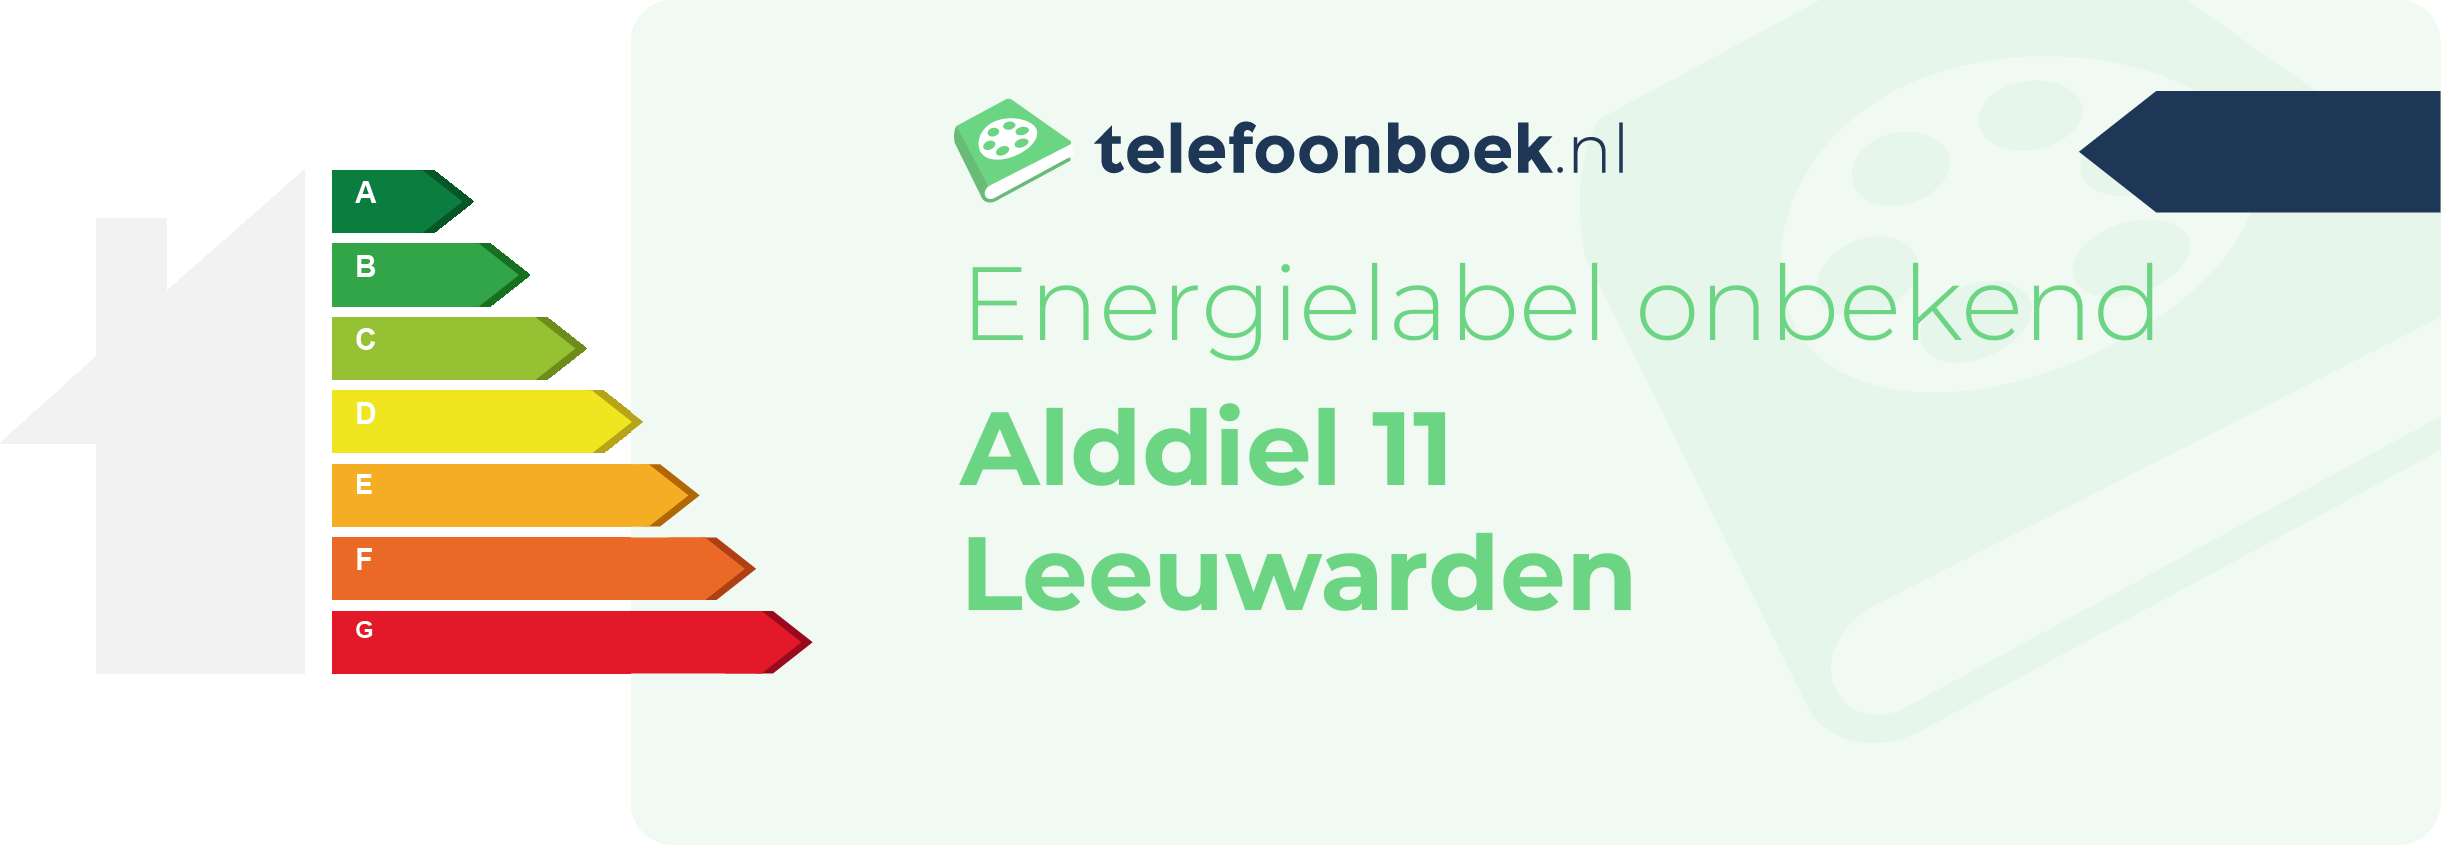 Energielabel Alddiel 11 Leeuwarden